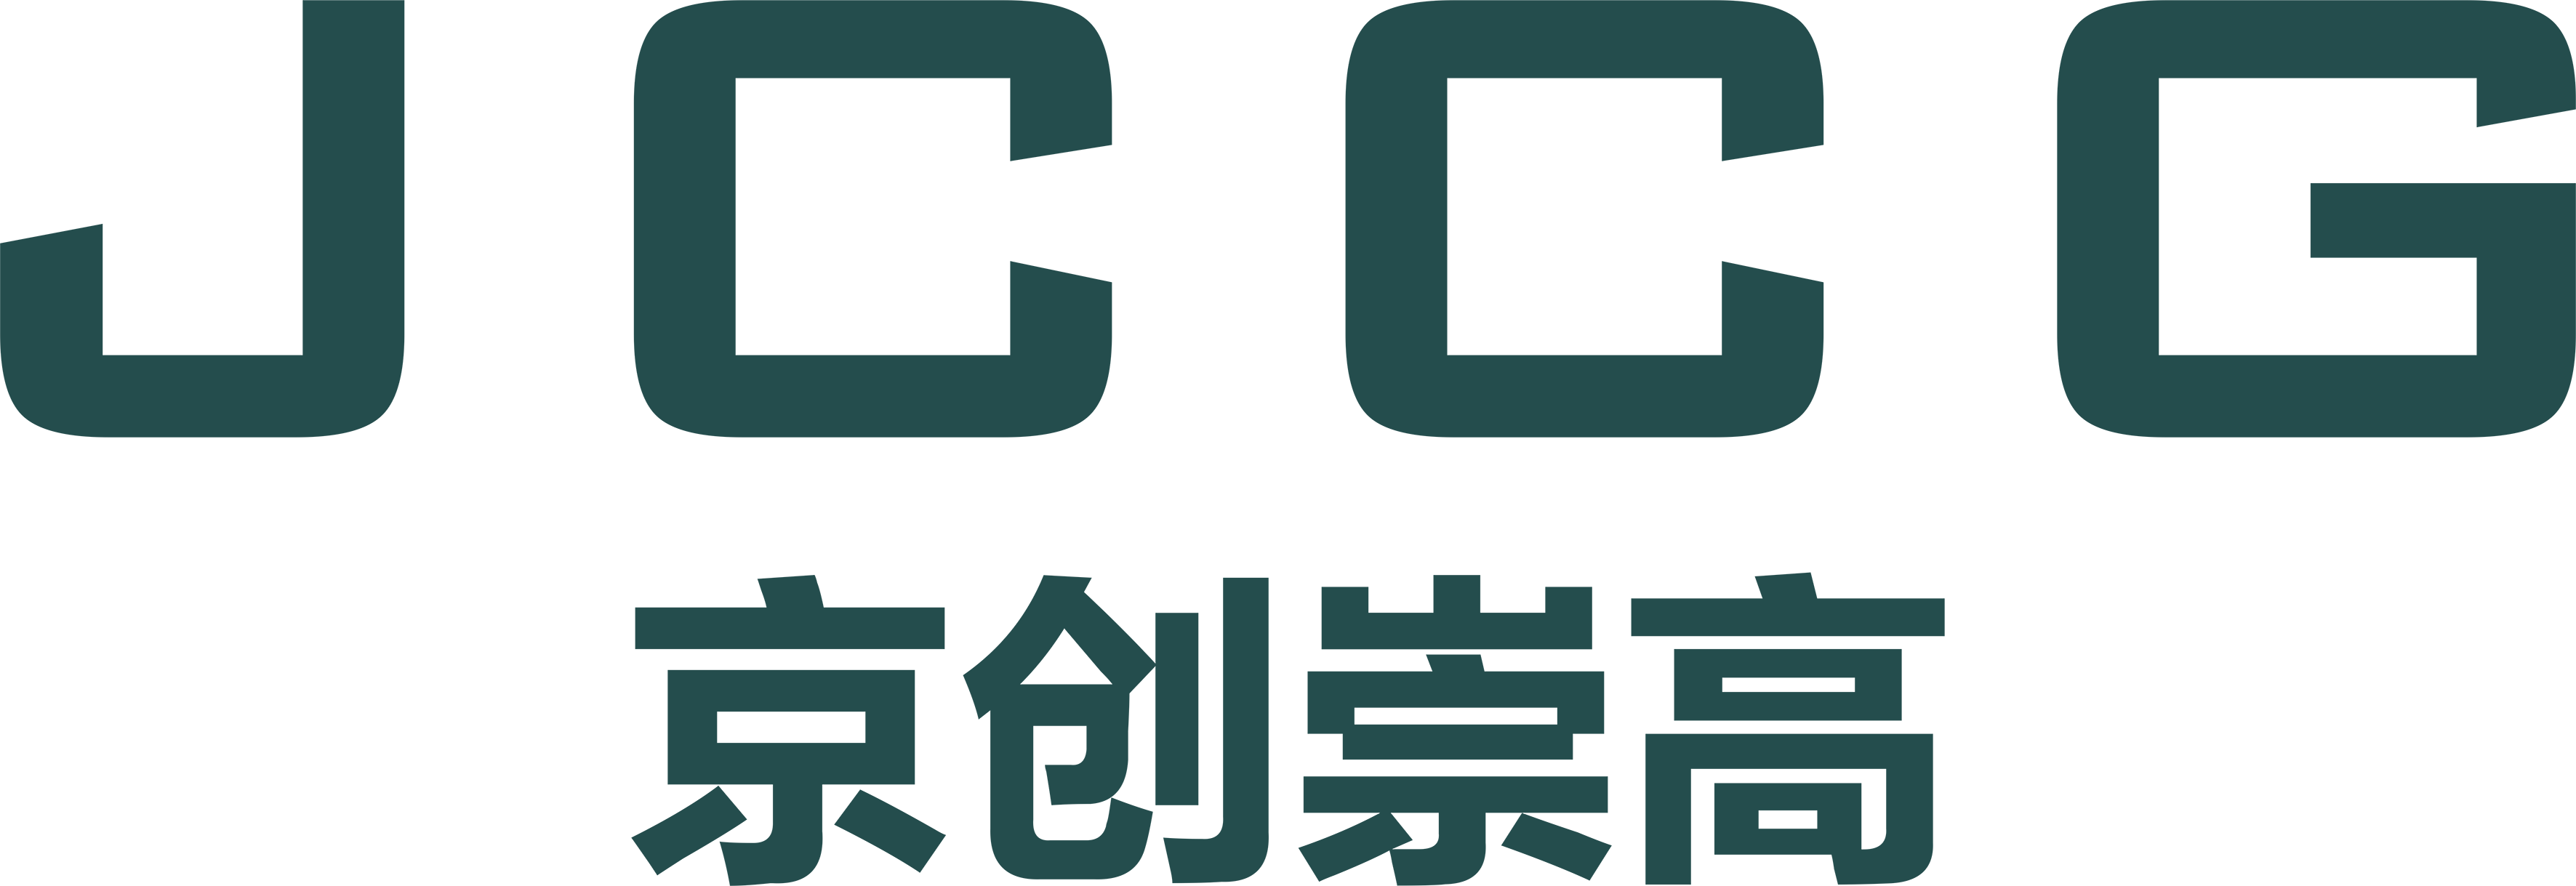 武汉mg官方在线电子游戏有限公司品牌Logo